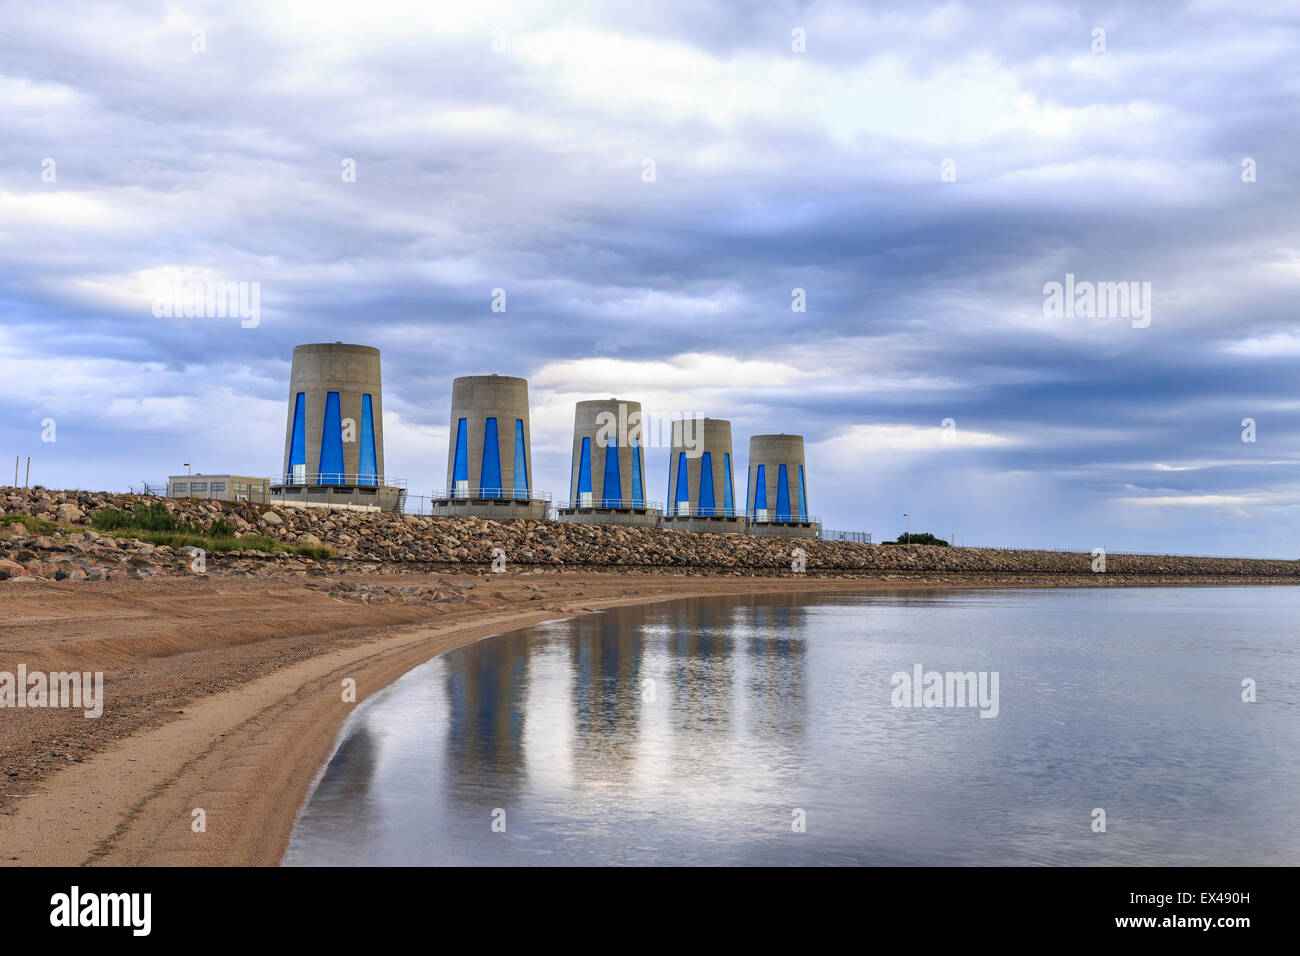 Las turbinas hidroeléctricas en Gardiner presa sobre el lago Diefenbaker, Saskatchewan, Canadá. Foto de stock